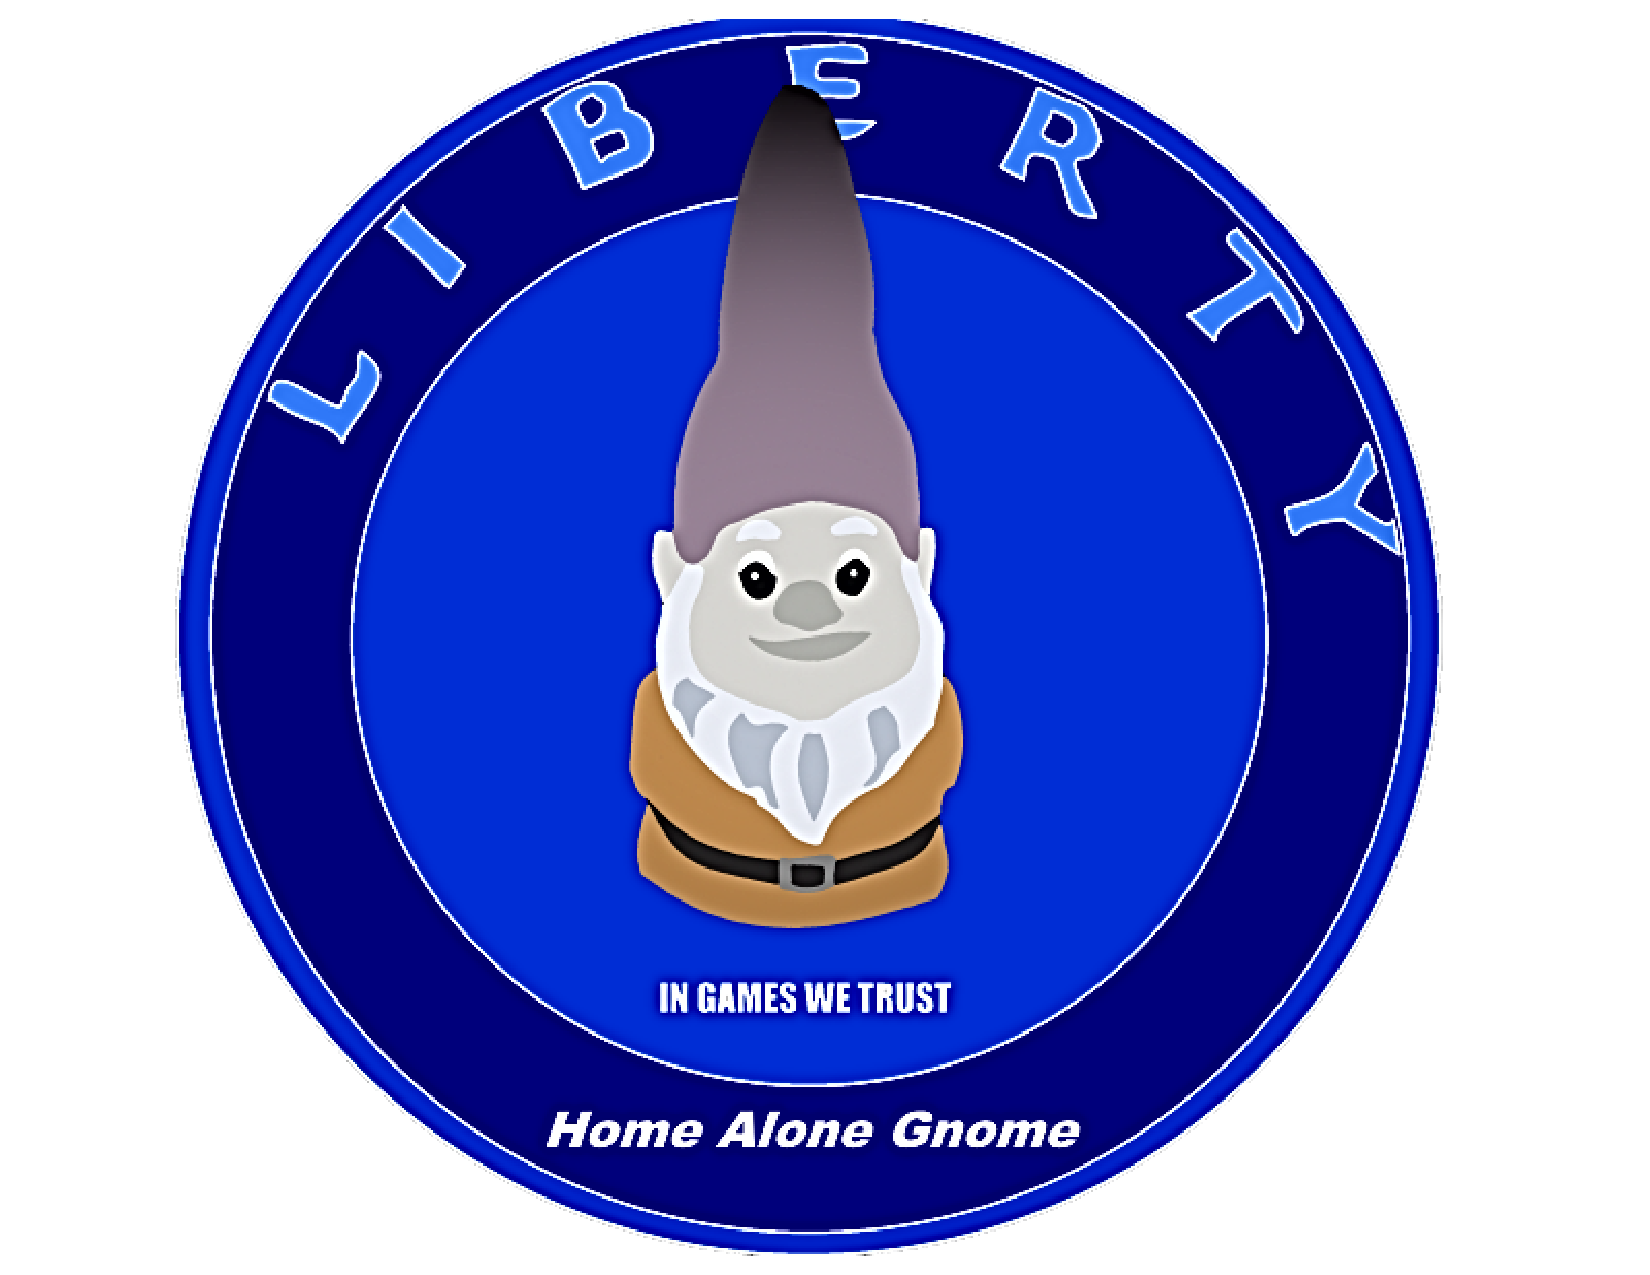 Home Alone Gnome